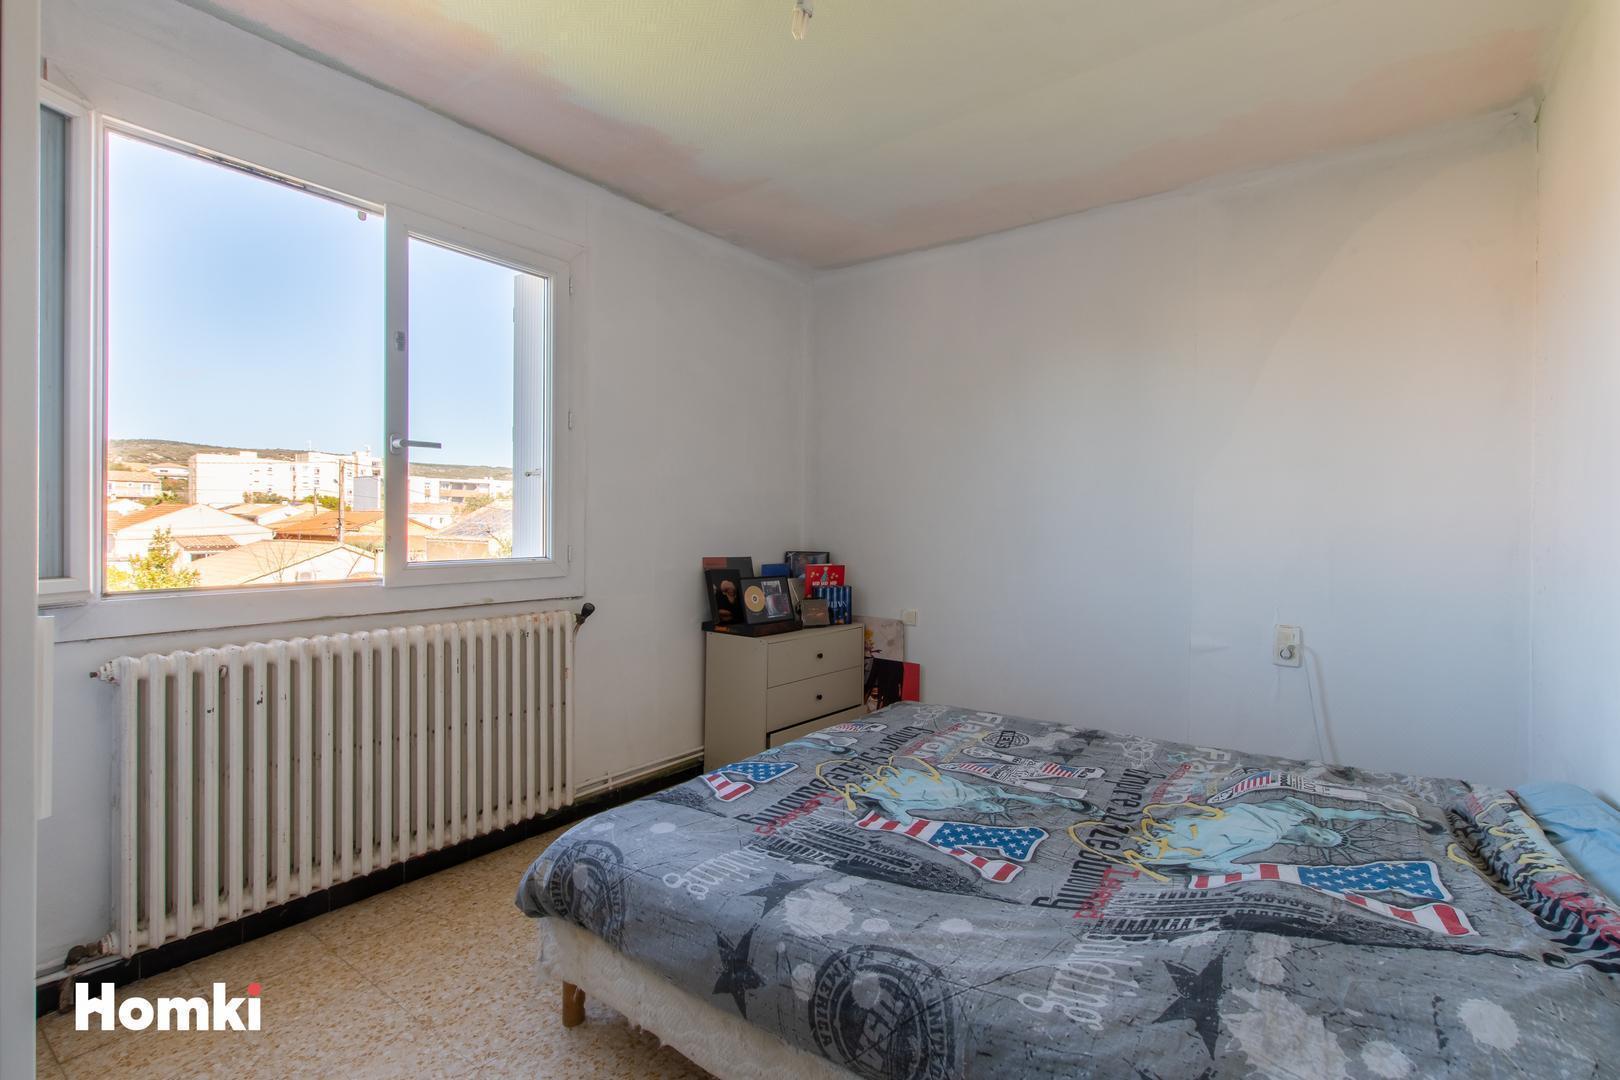 Homki - Vente Appartement  de 97.0 m² à Frontignan 34110